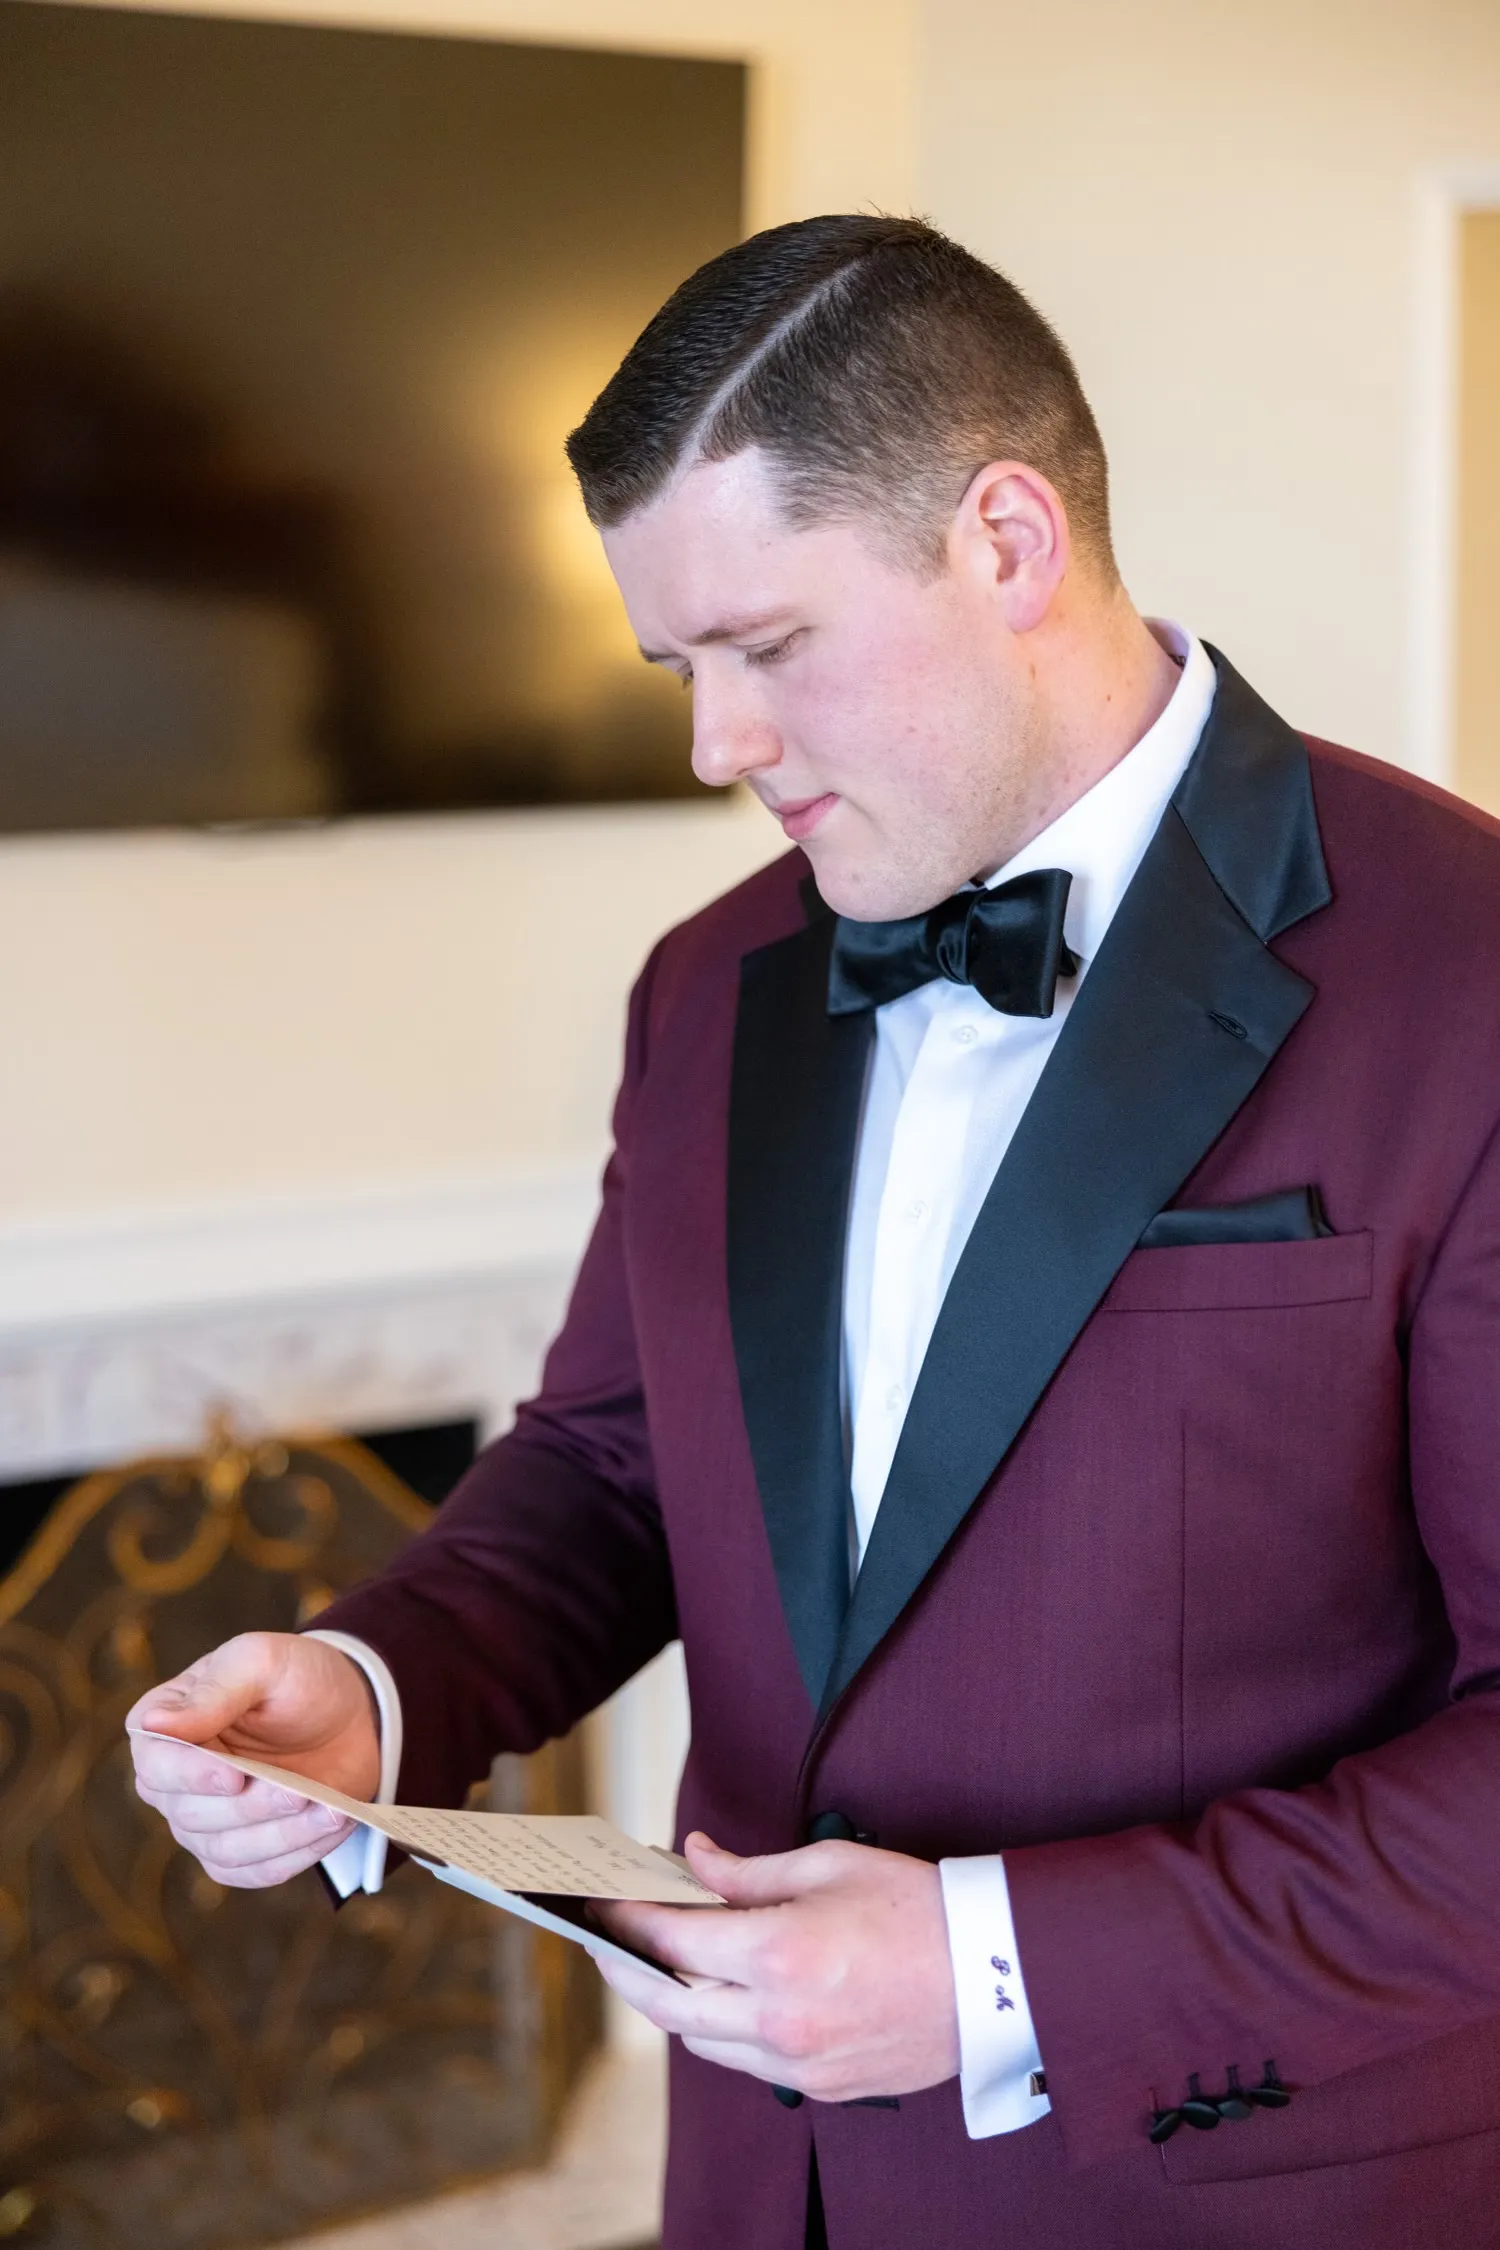 Designer Wedding Suits For Men